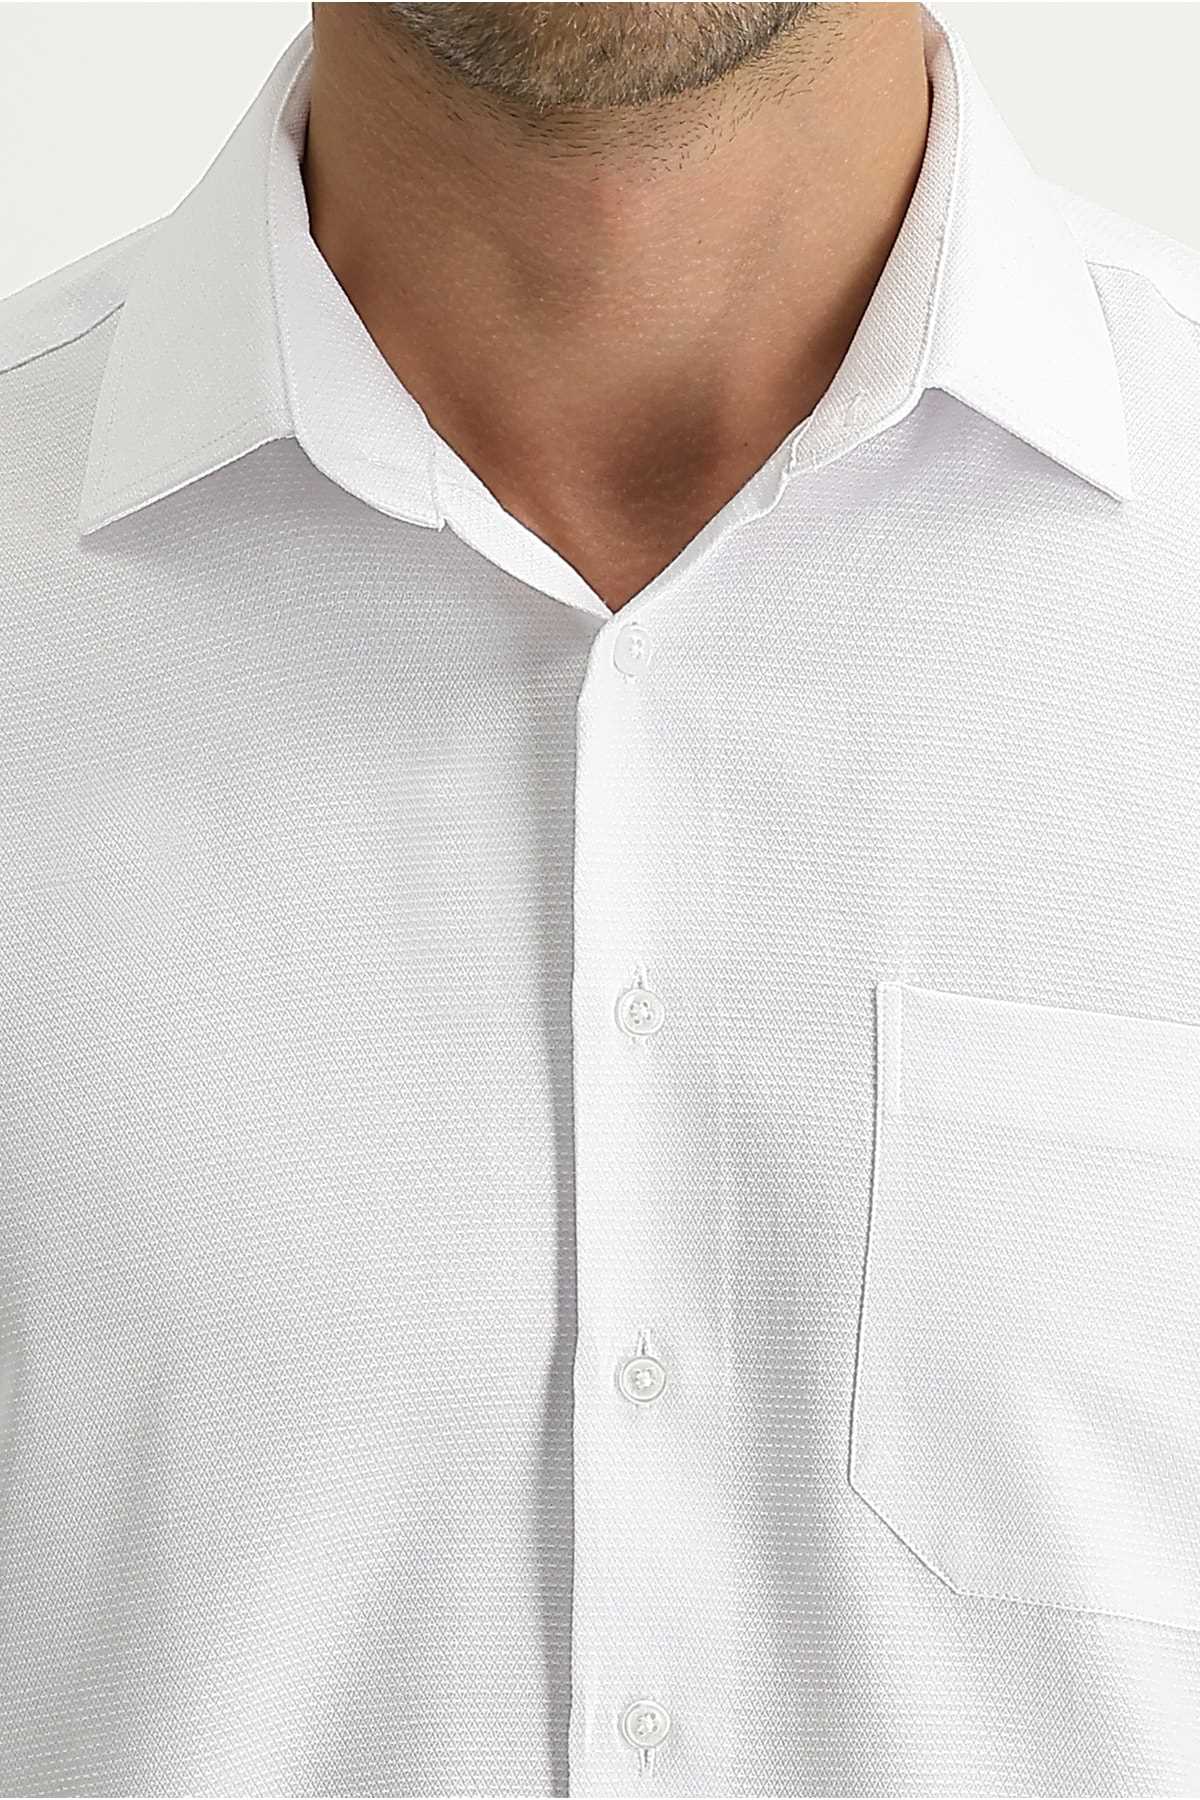 فروش پیراهن مجلسی مردانه اصل برند کیگیلی رنگ سفید ty85584270